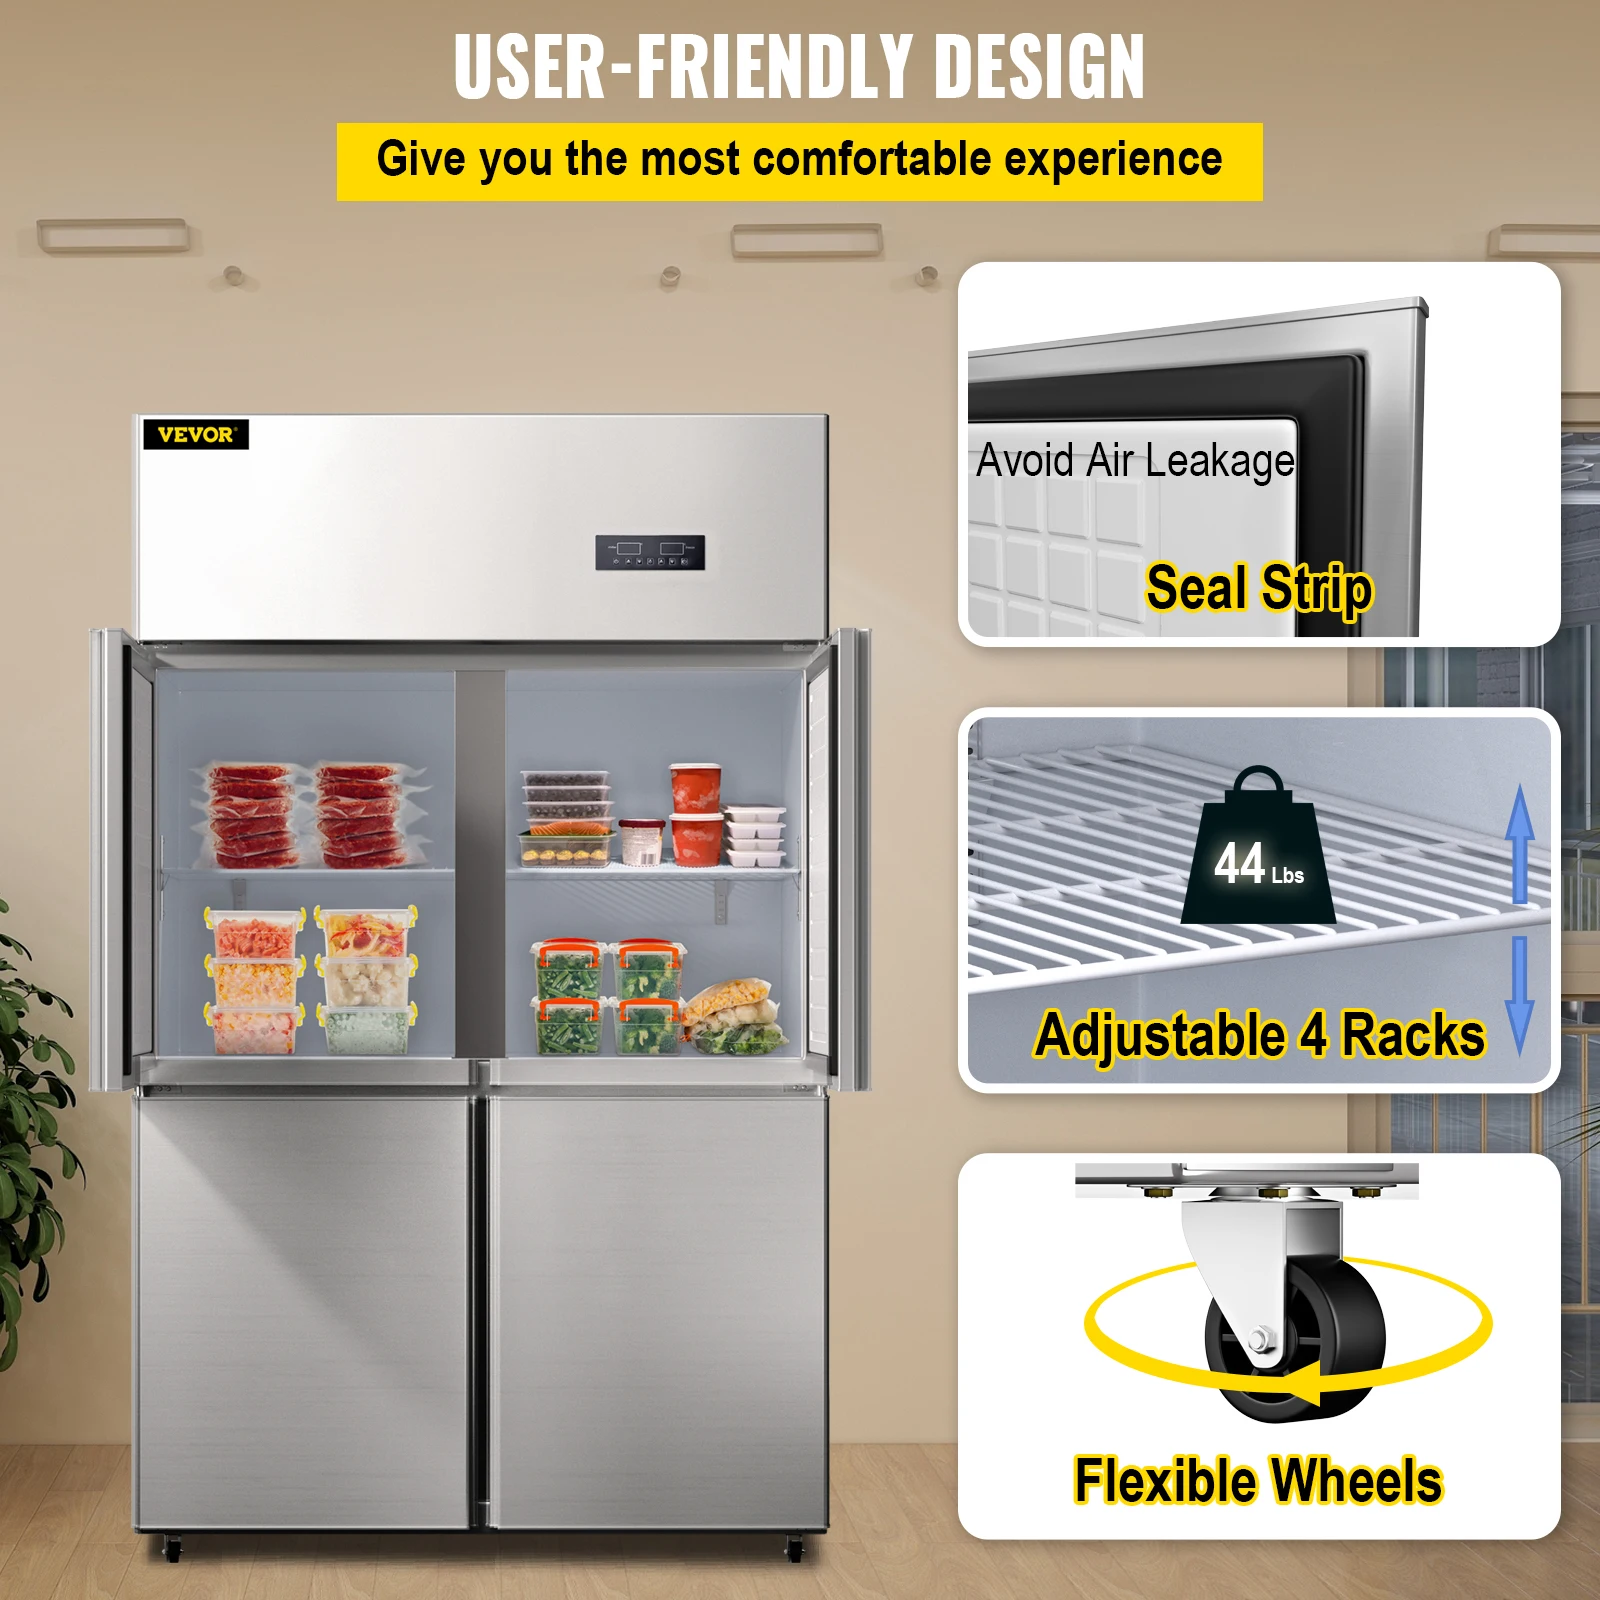 Коммерческий 4-дверный вертикальный холодильник VEVOR объемом 27,5 куб. футов из нержавеющей стали с двойным контролем температуры для кухни ресторана